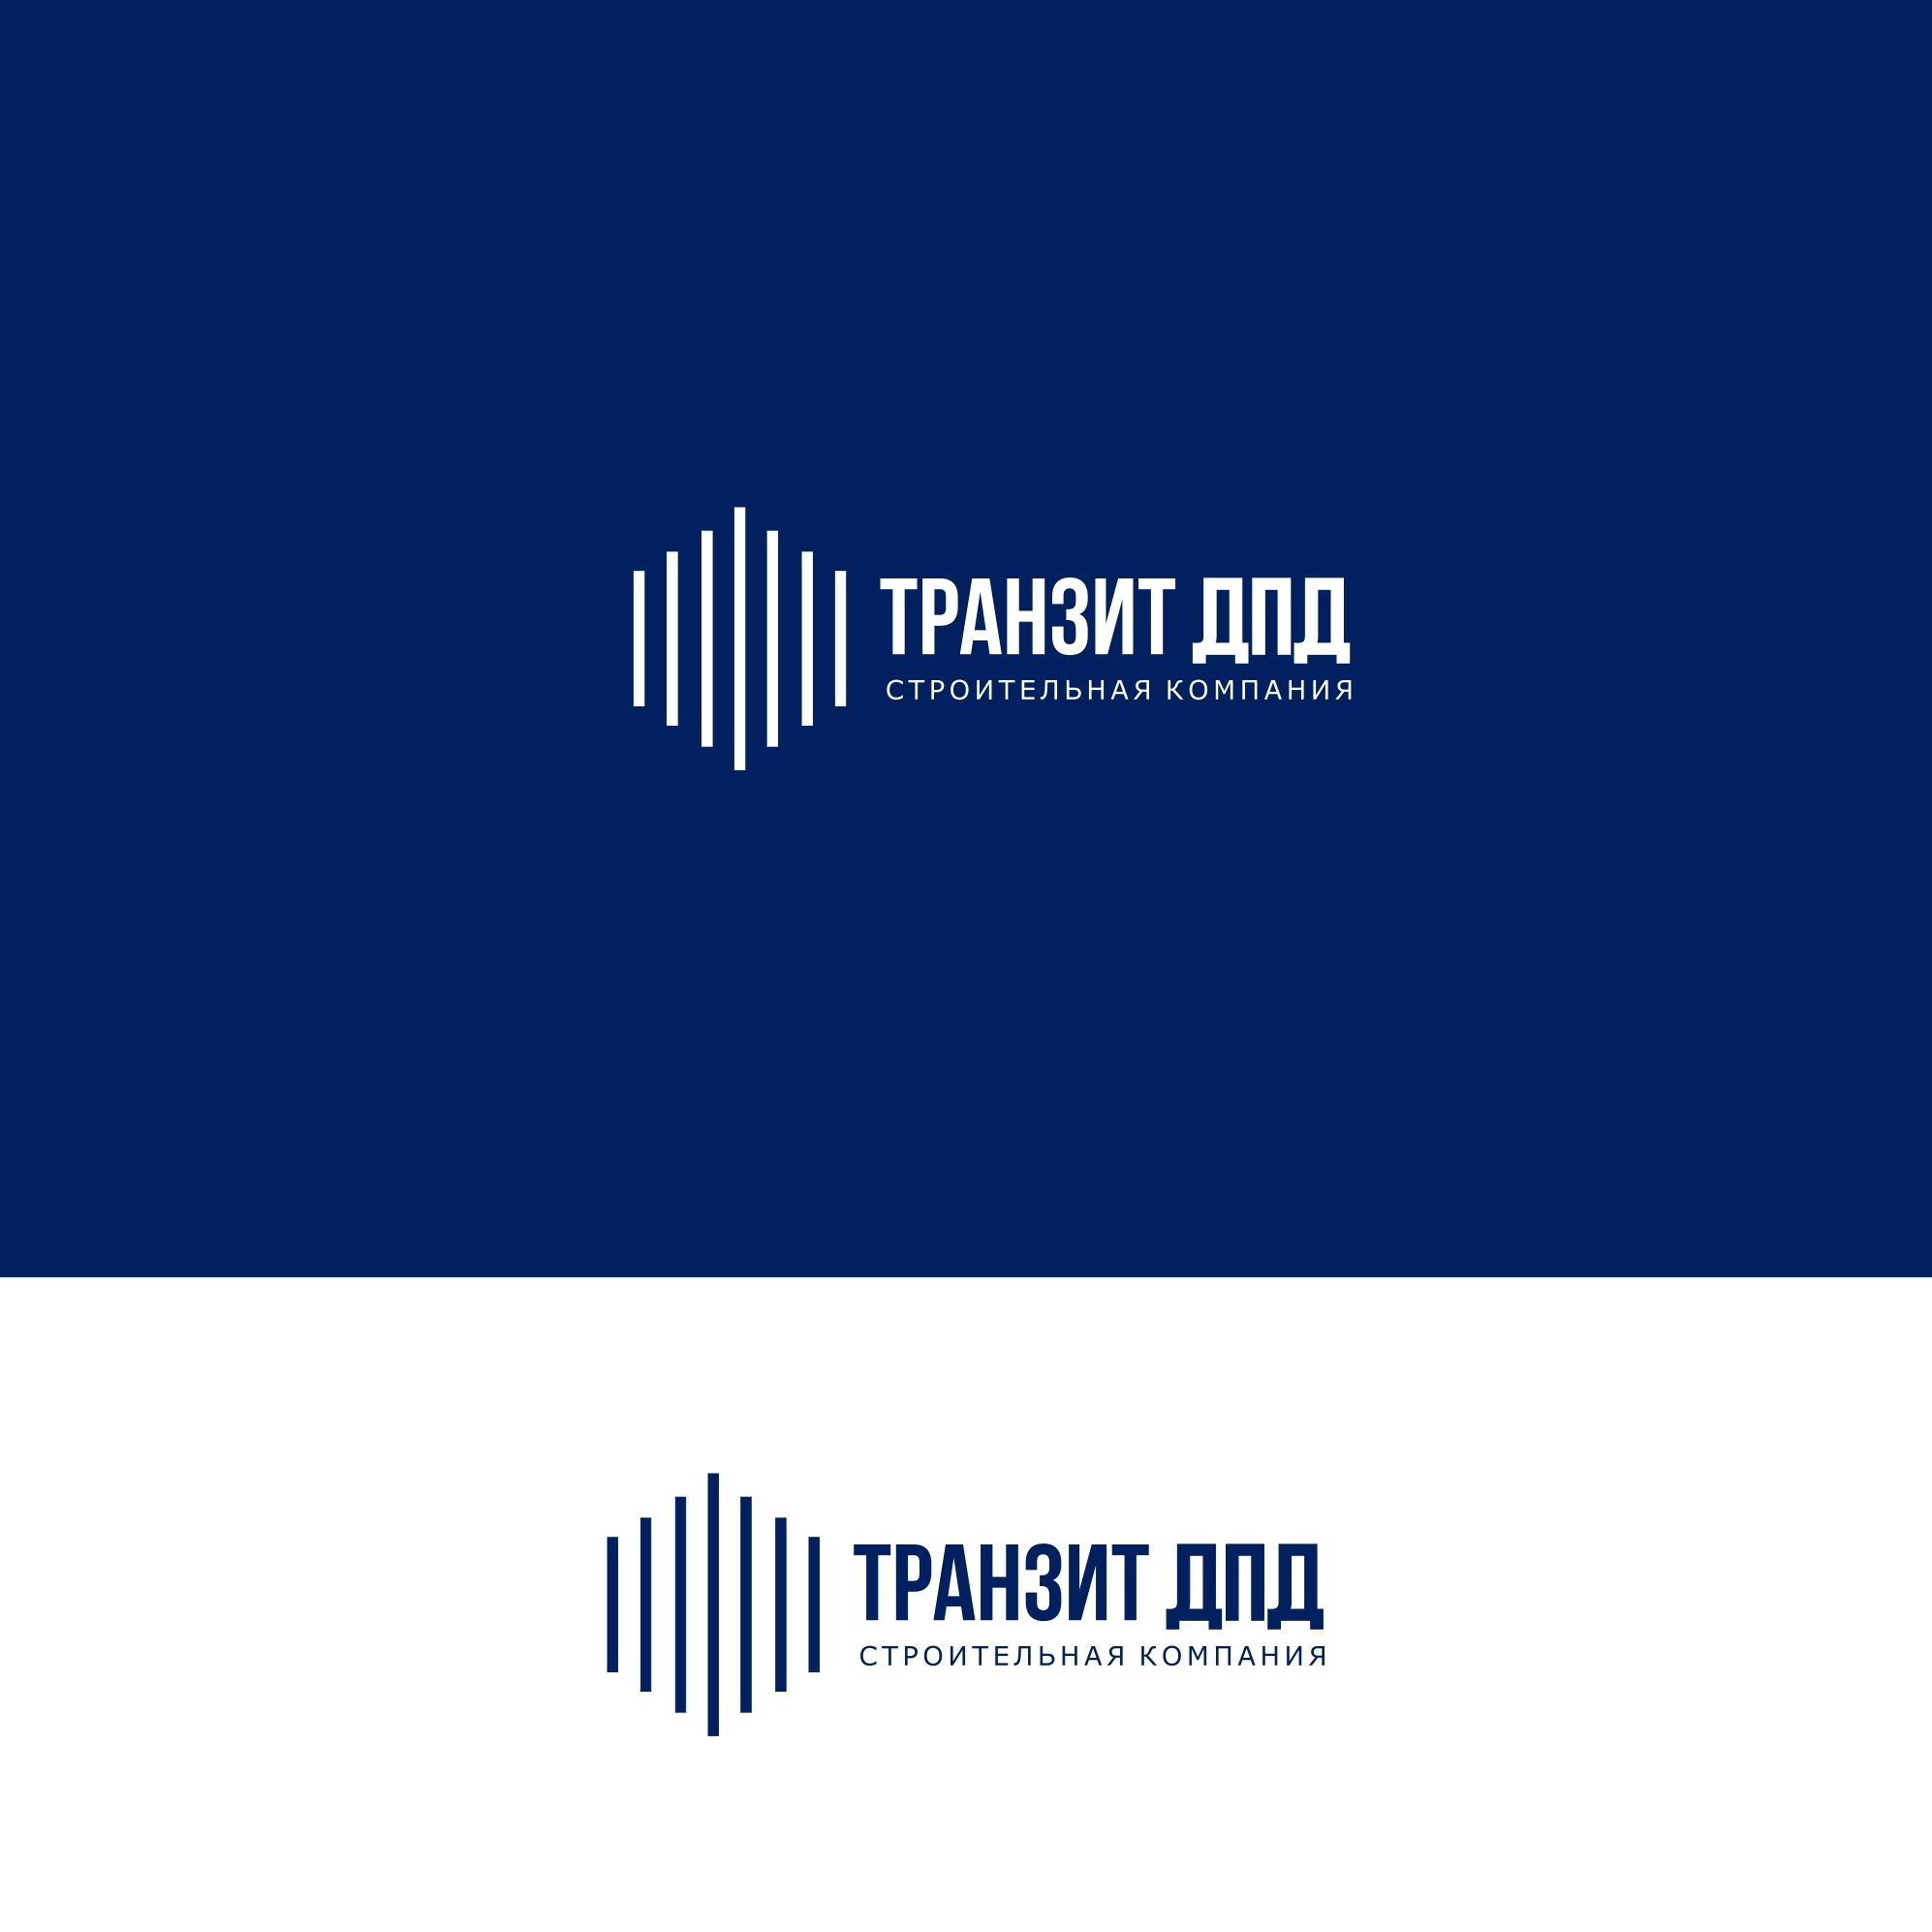 Логотип для Транзит ДПД - дизайнер serz4868